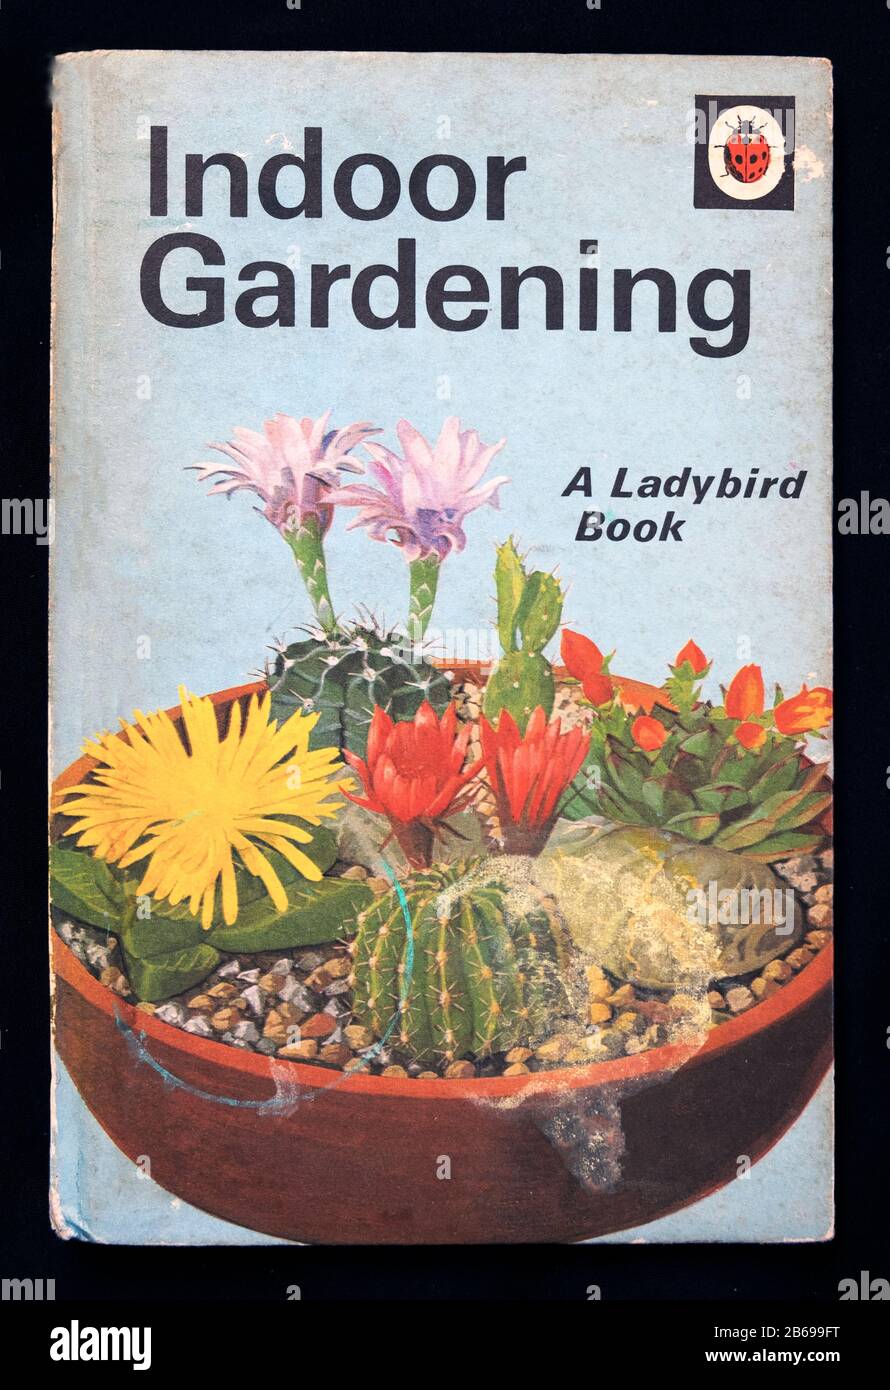 "Indoor-Gardening"-Frontabdeckung des Kinder-Ladybird-Buches mit einem Terrakotta-Topf mit Kakteen-Kakteen im blütenblühenden England Großbritannien. KATHY DEWITT Stockfoto